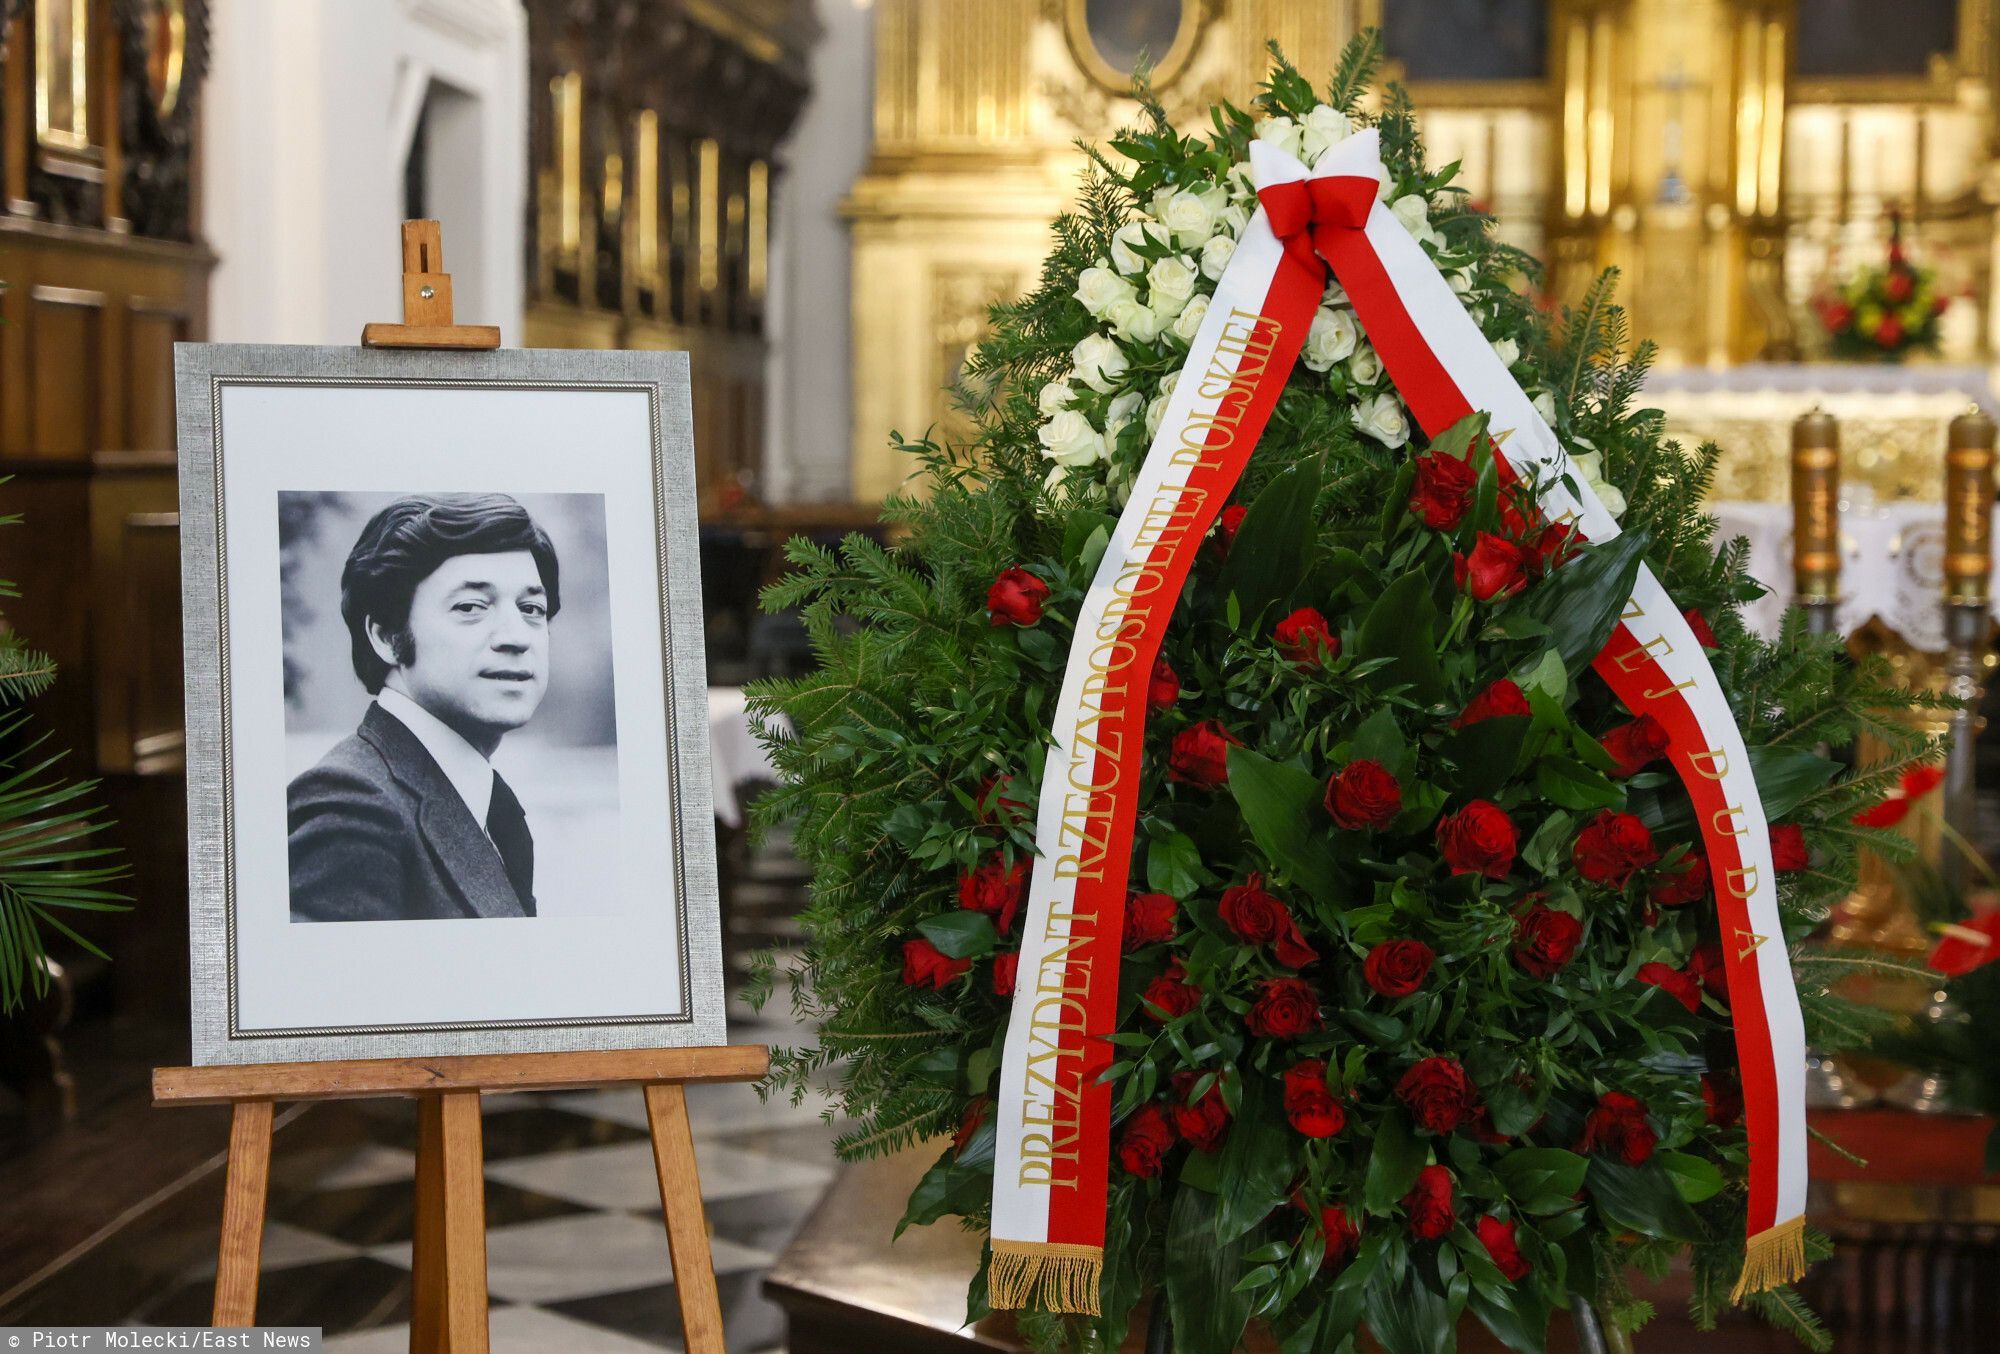 Pogrzeb Jerzego Połomskiego. Fot.: Piotr Molecki/East News